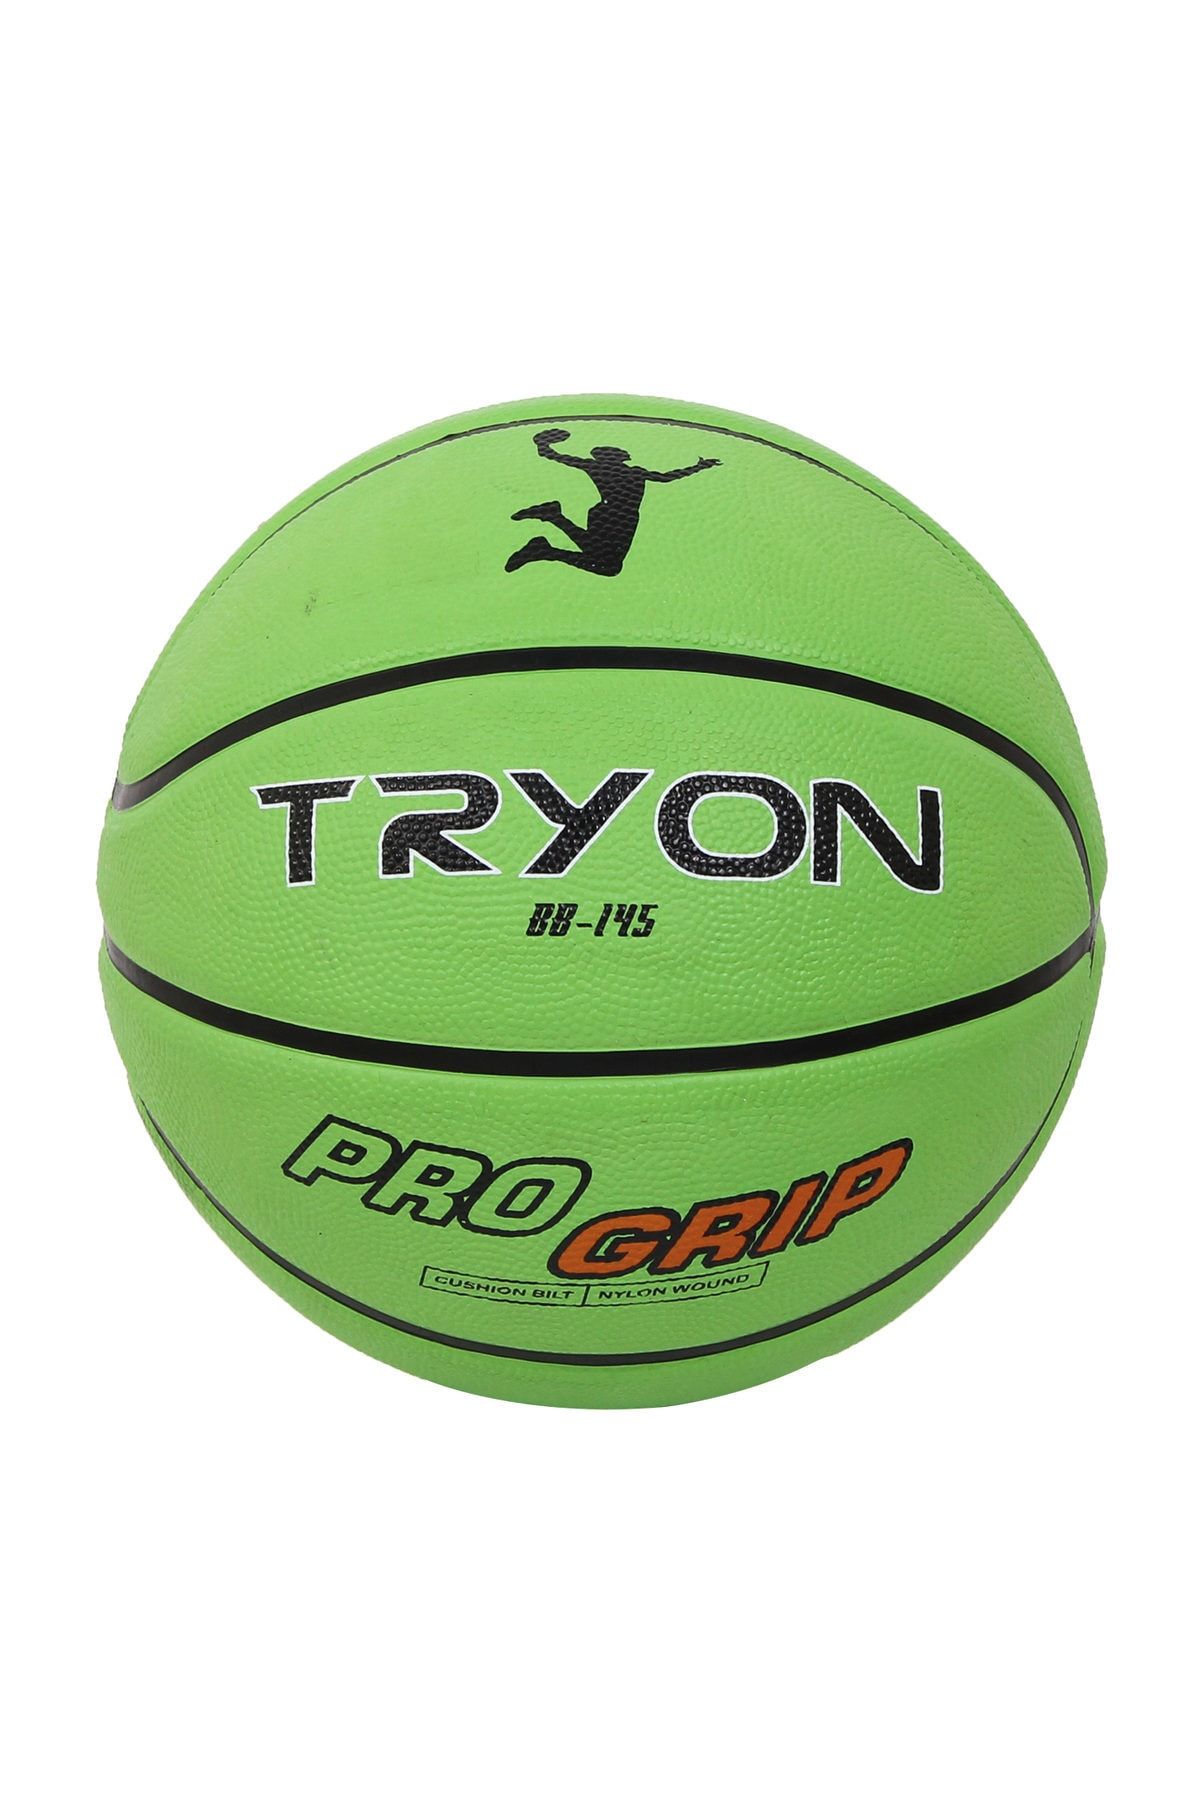 TRYON Basketbol Topu Bb-145 7 No